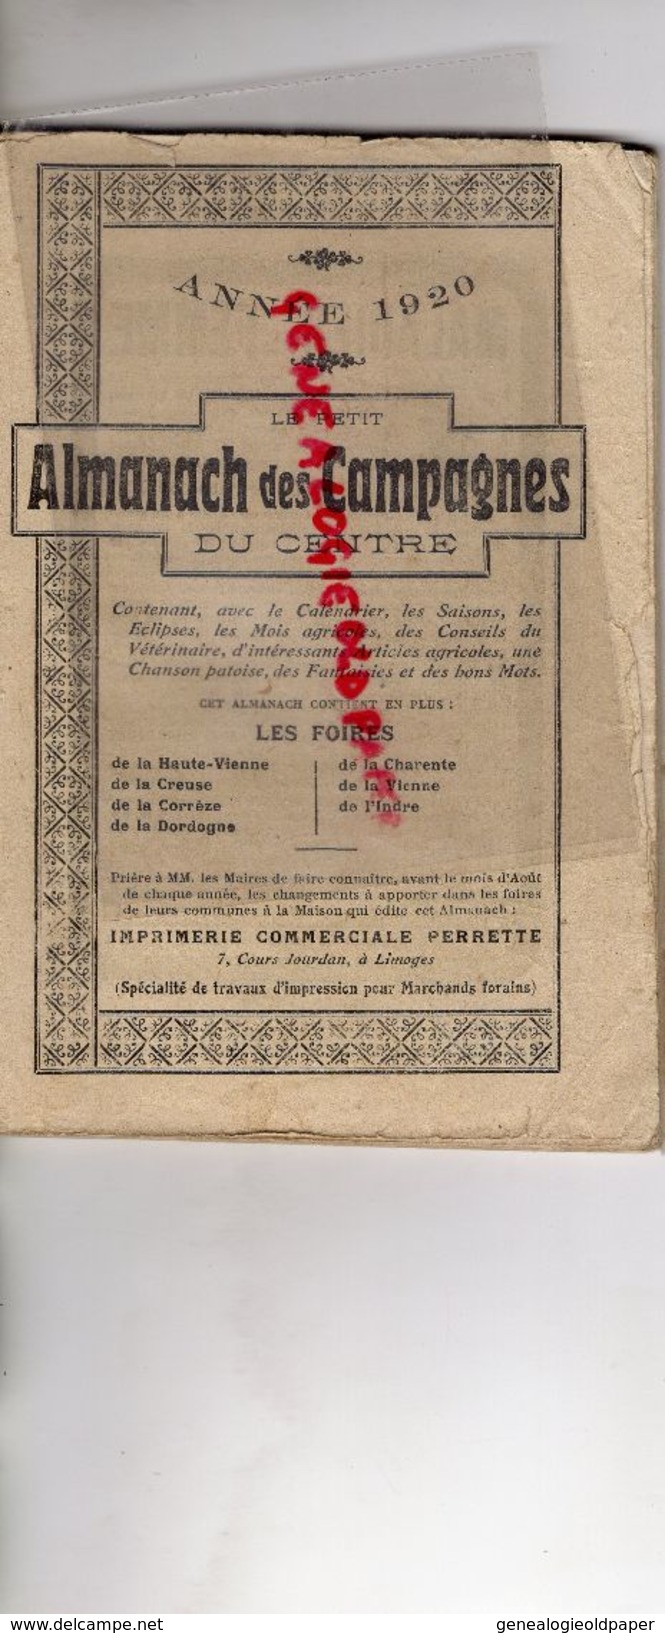 87-19-23-24-16-86-36-RARE PETIT ALMANACH CAMPAGNES DU CENTRE-IMPRIMERIE PERRETTE LIMOGES-FOIRES 1920-TUBERCULOSE-LEGROS - Limousin